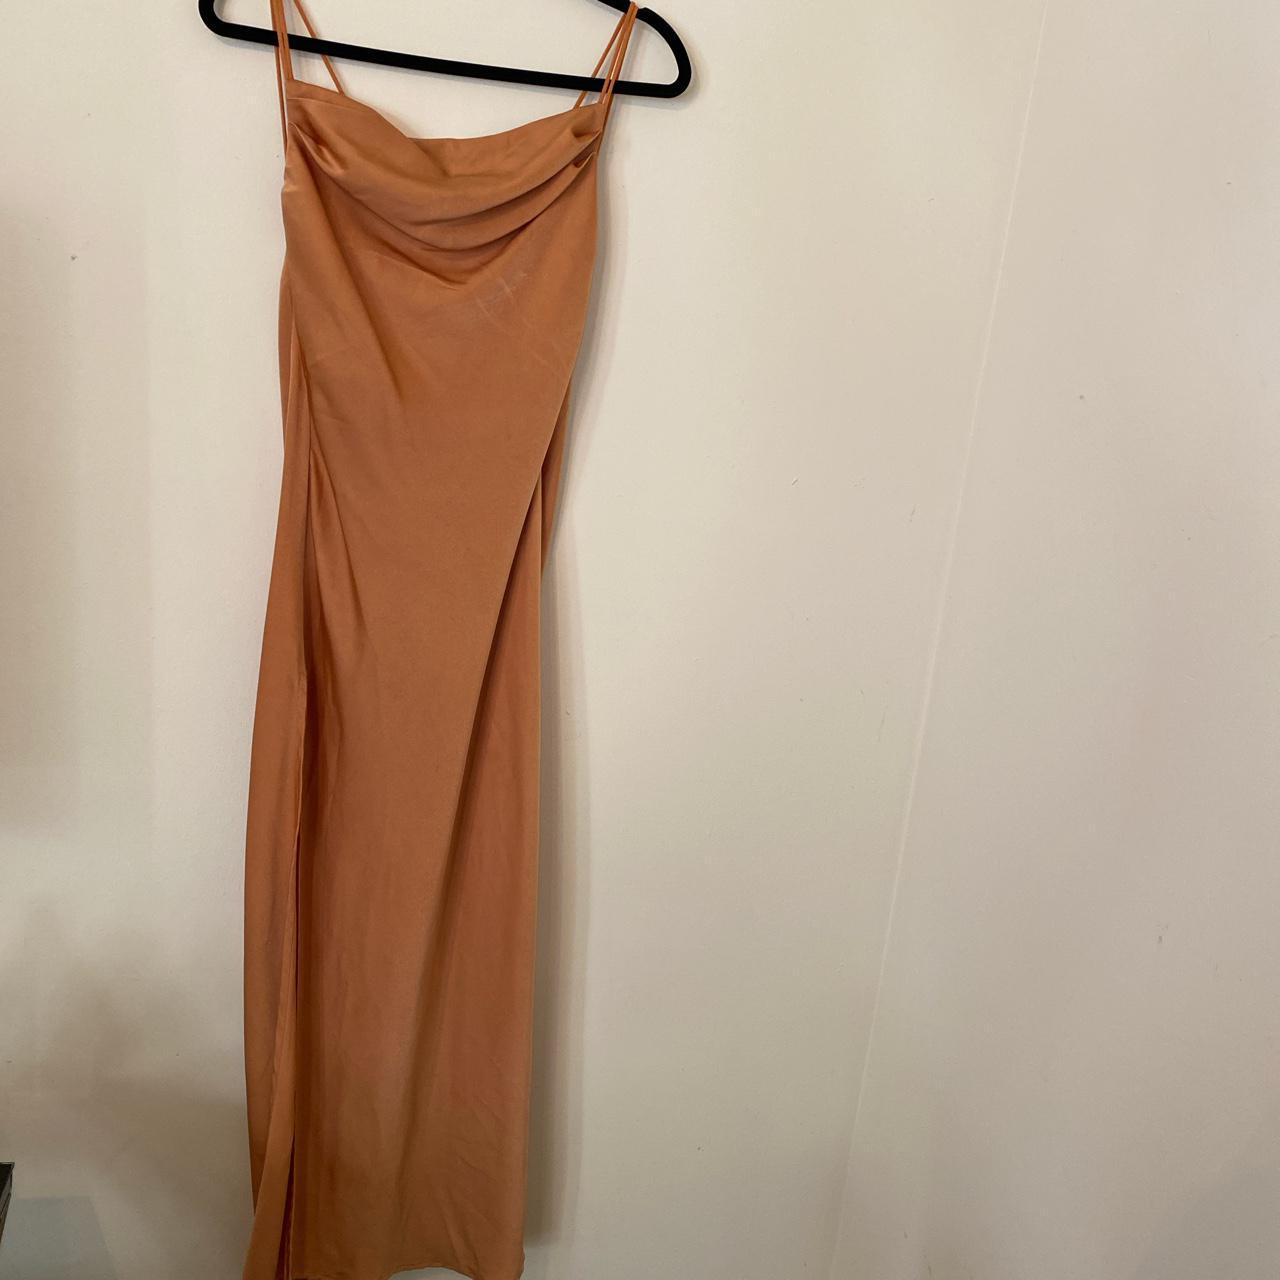 SHEIN Women's Orange Dress | Depop